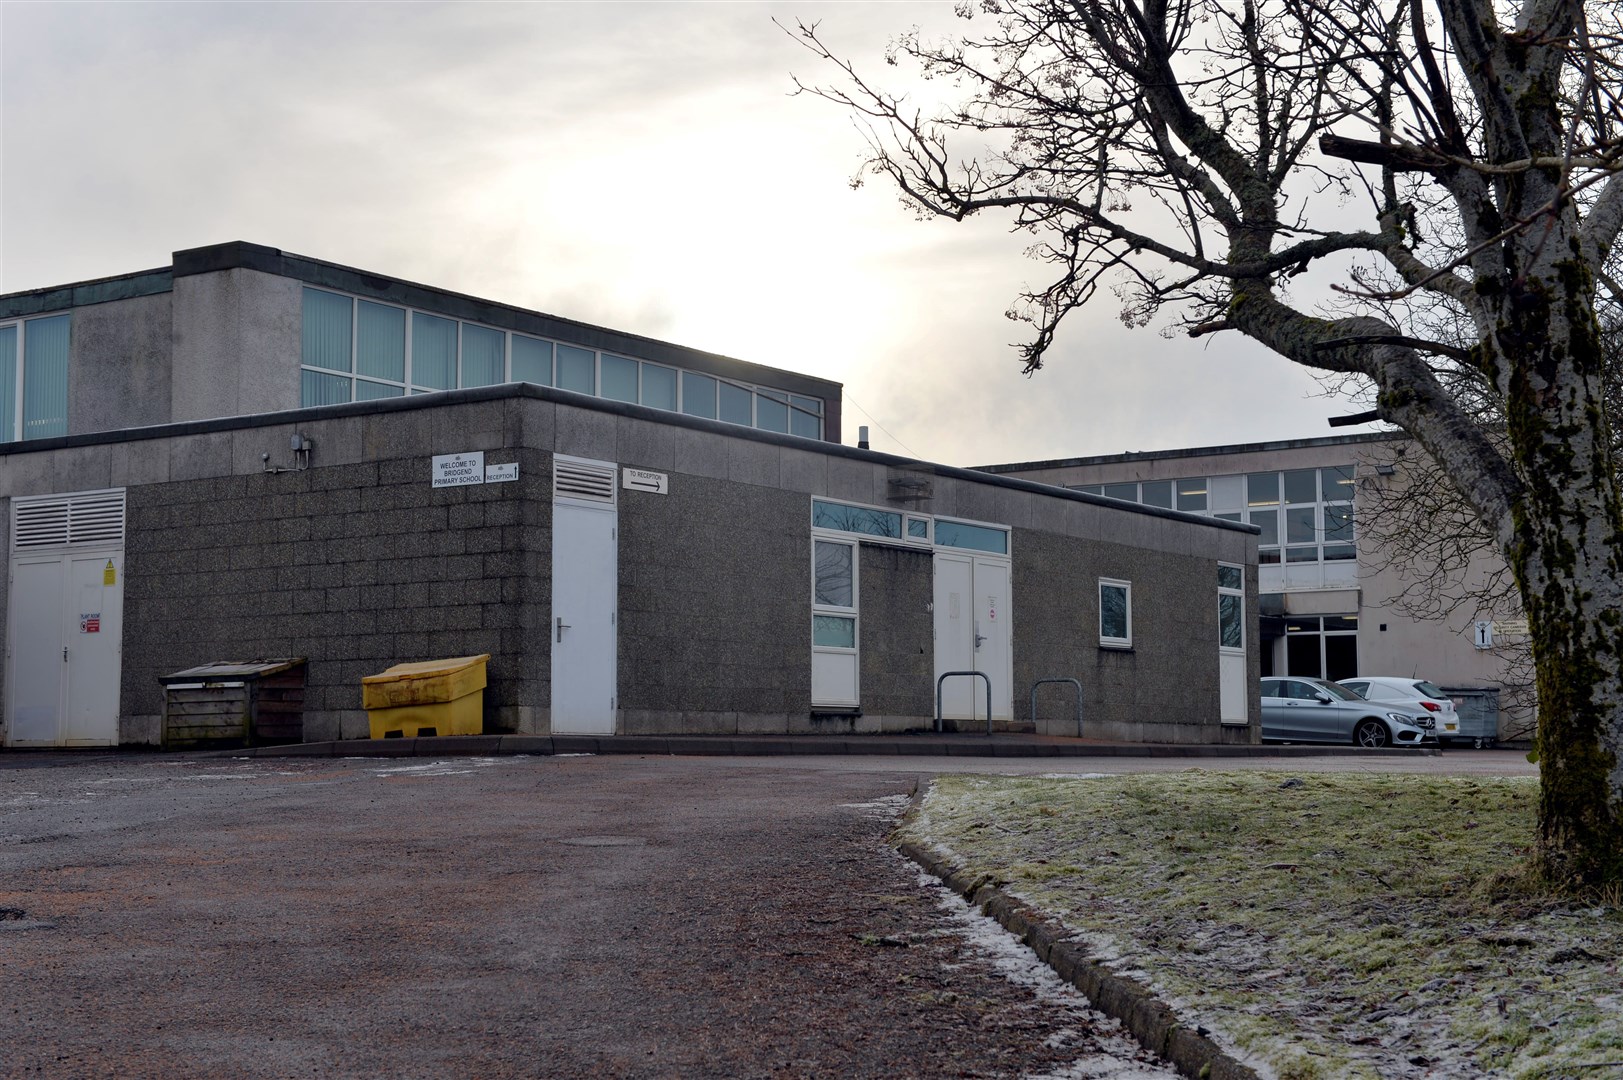 Bridgend Primary School, Alness was the subject of vandalism last week.